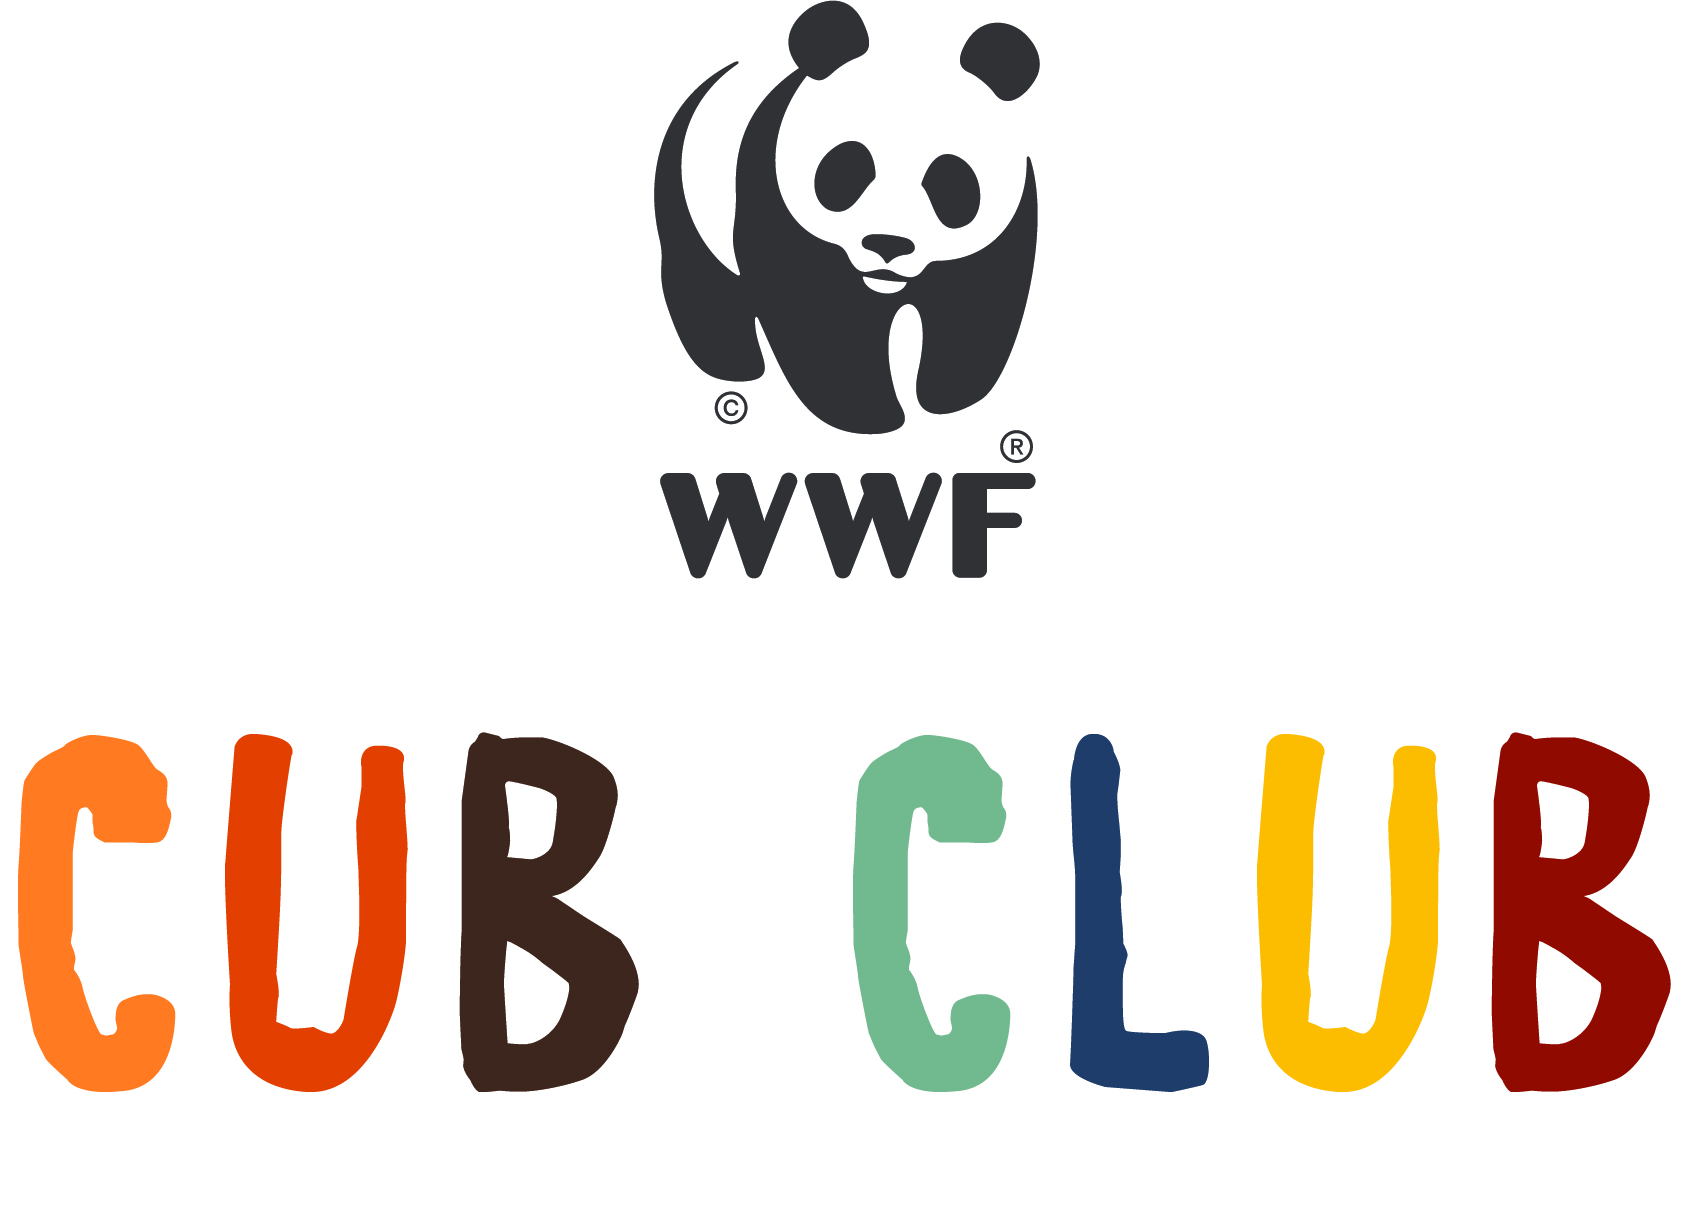 WWF Cub Club